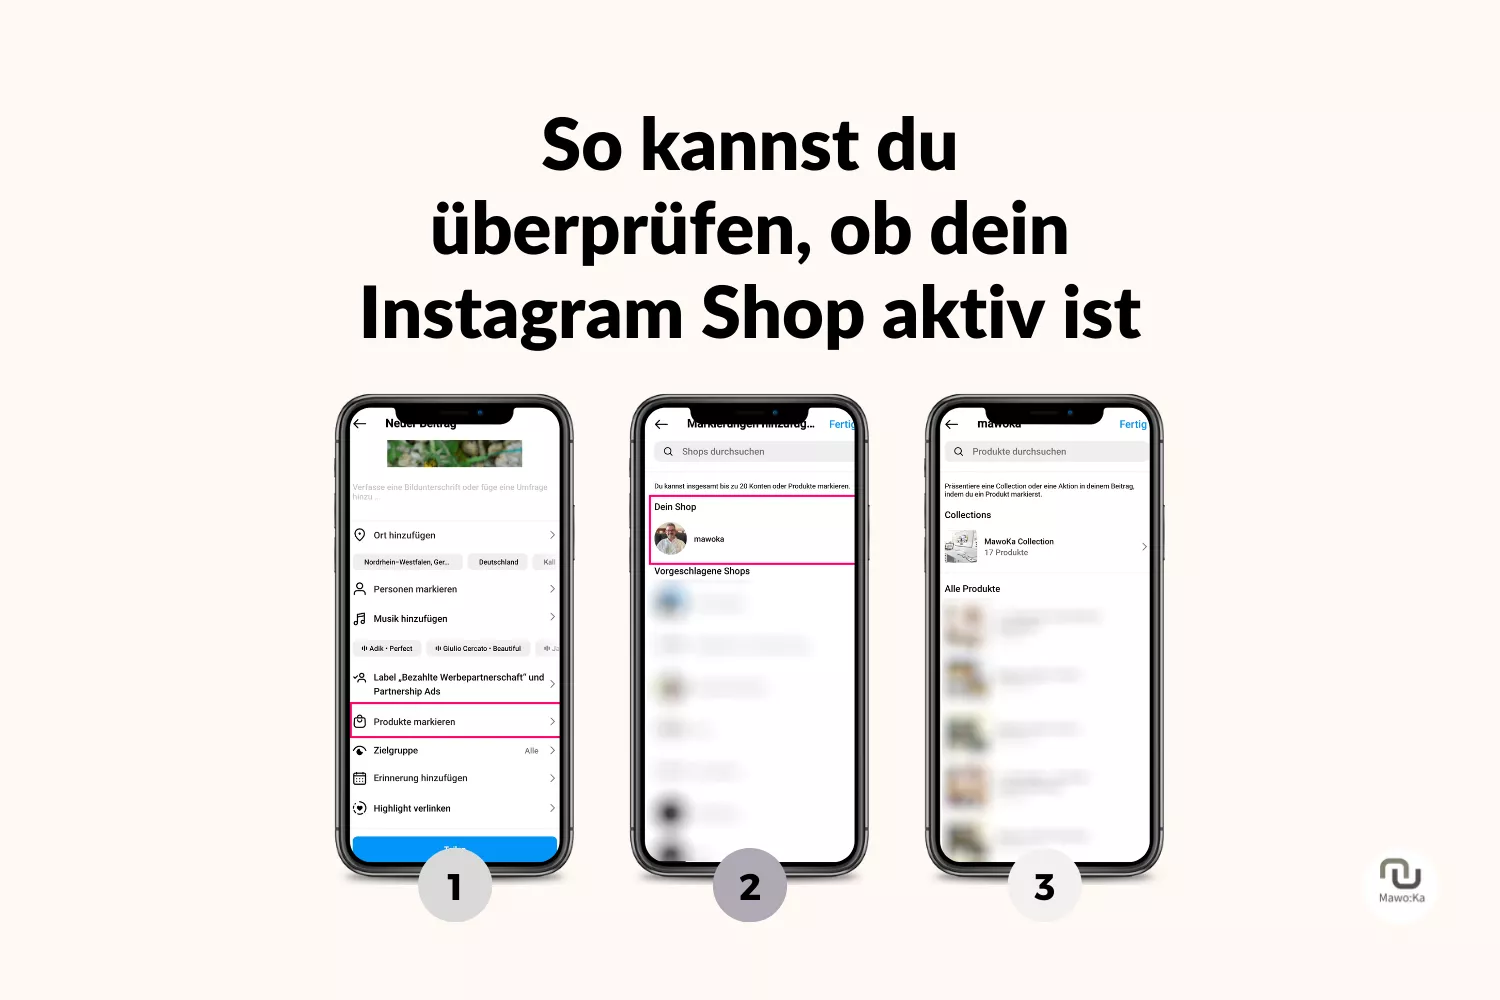 Darstellung der vorgenannten Schritte zur Überprüfung der Aktivität des Instagram Shops